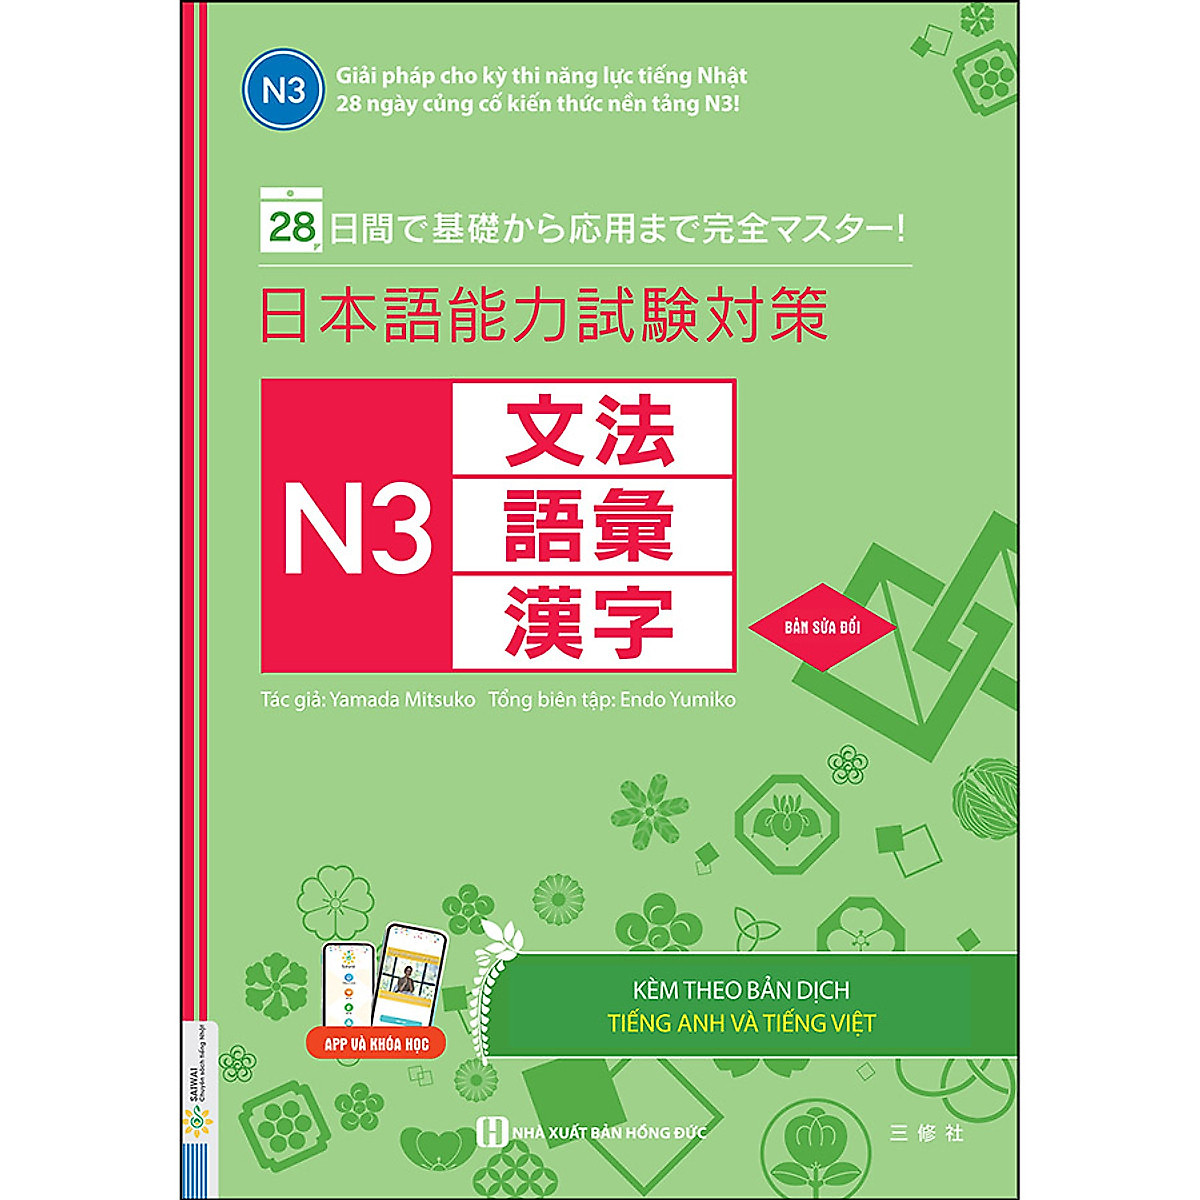 28 Ngày Củng Cố Kiến Thức Nền Tảng N3 (Học Cùng Với App MCBooks) – MinhAnBooks